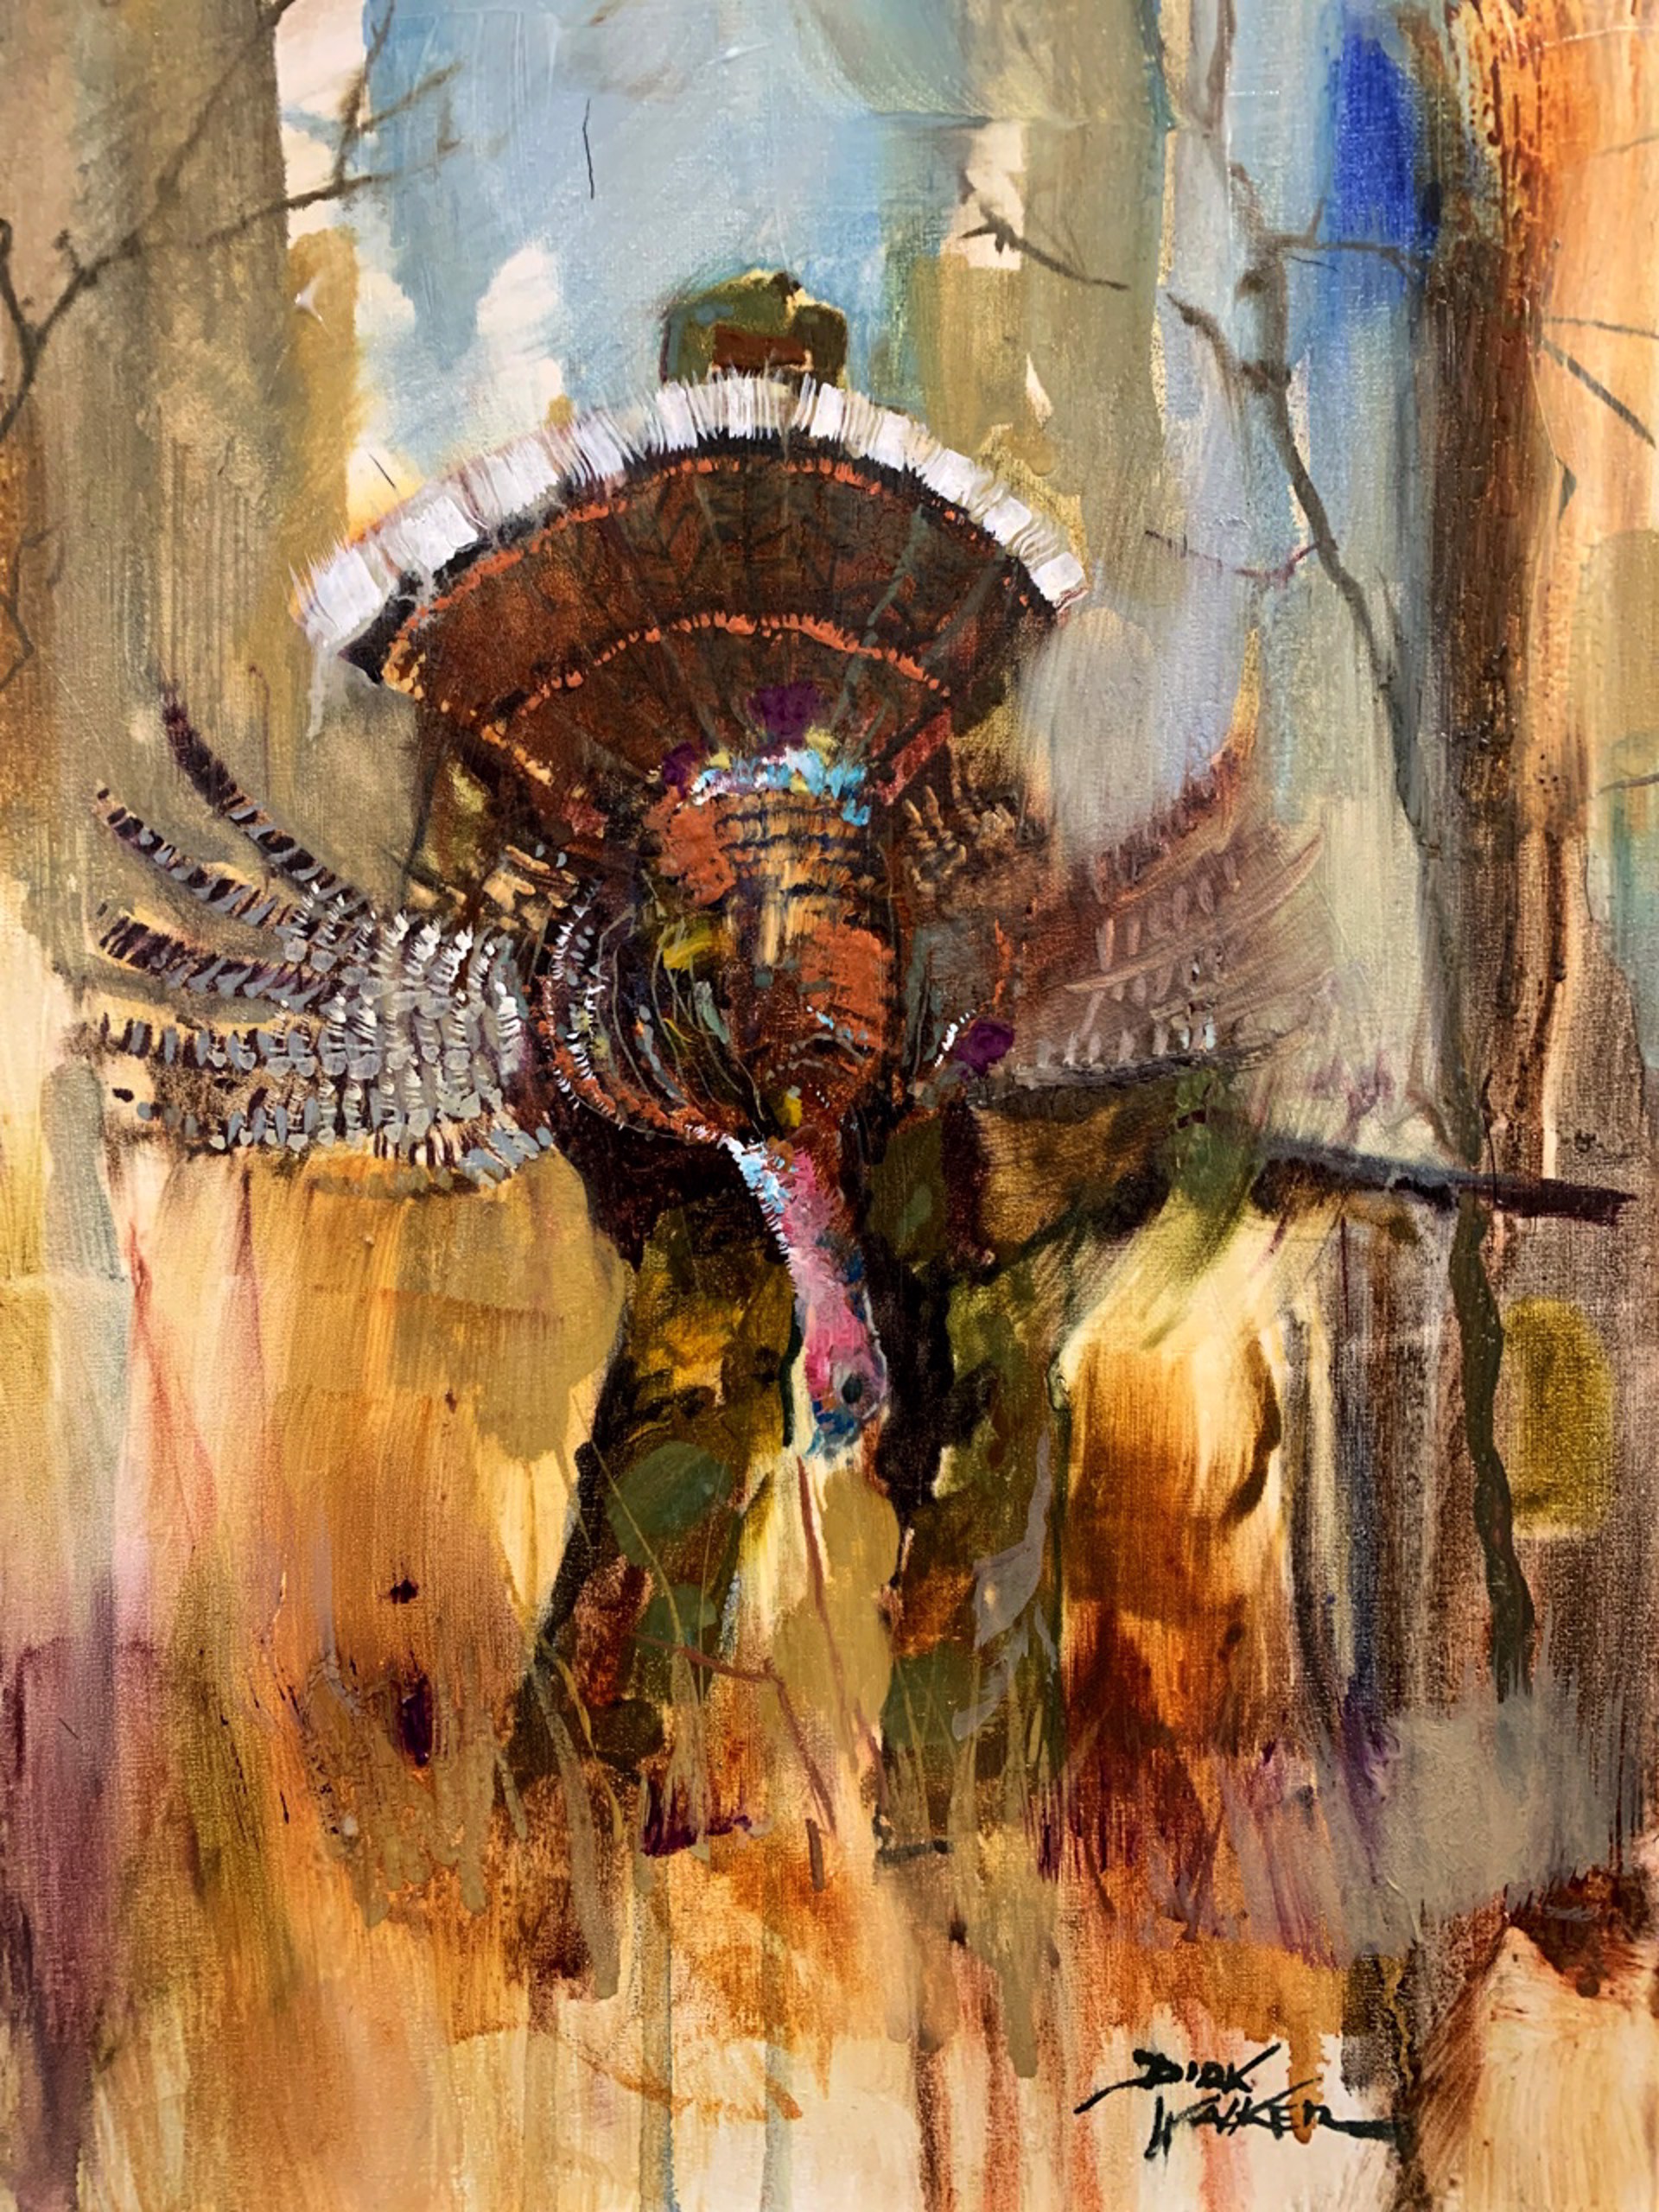 Single Kill - Turkey Hunter by Dirk Walker